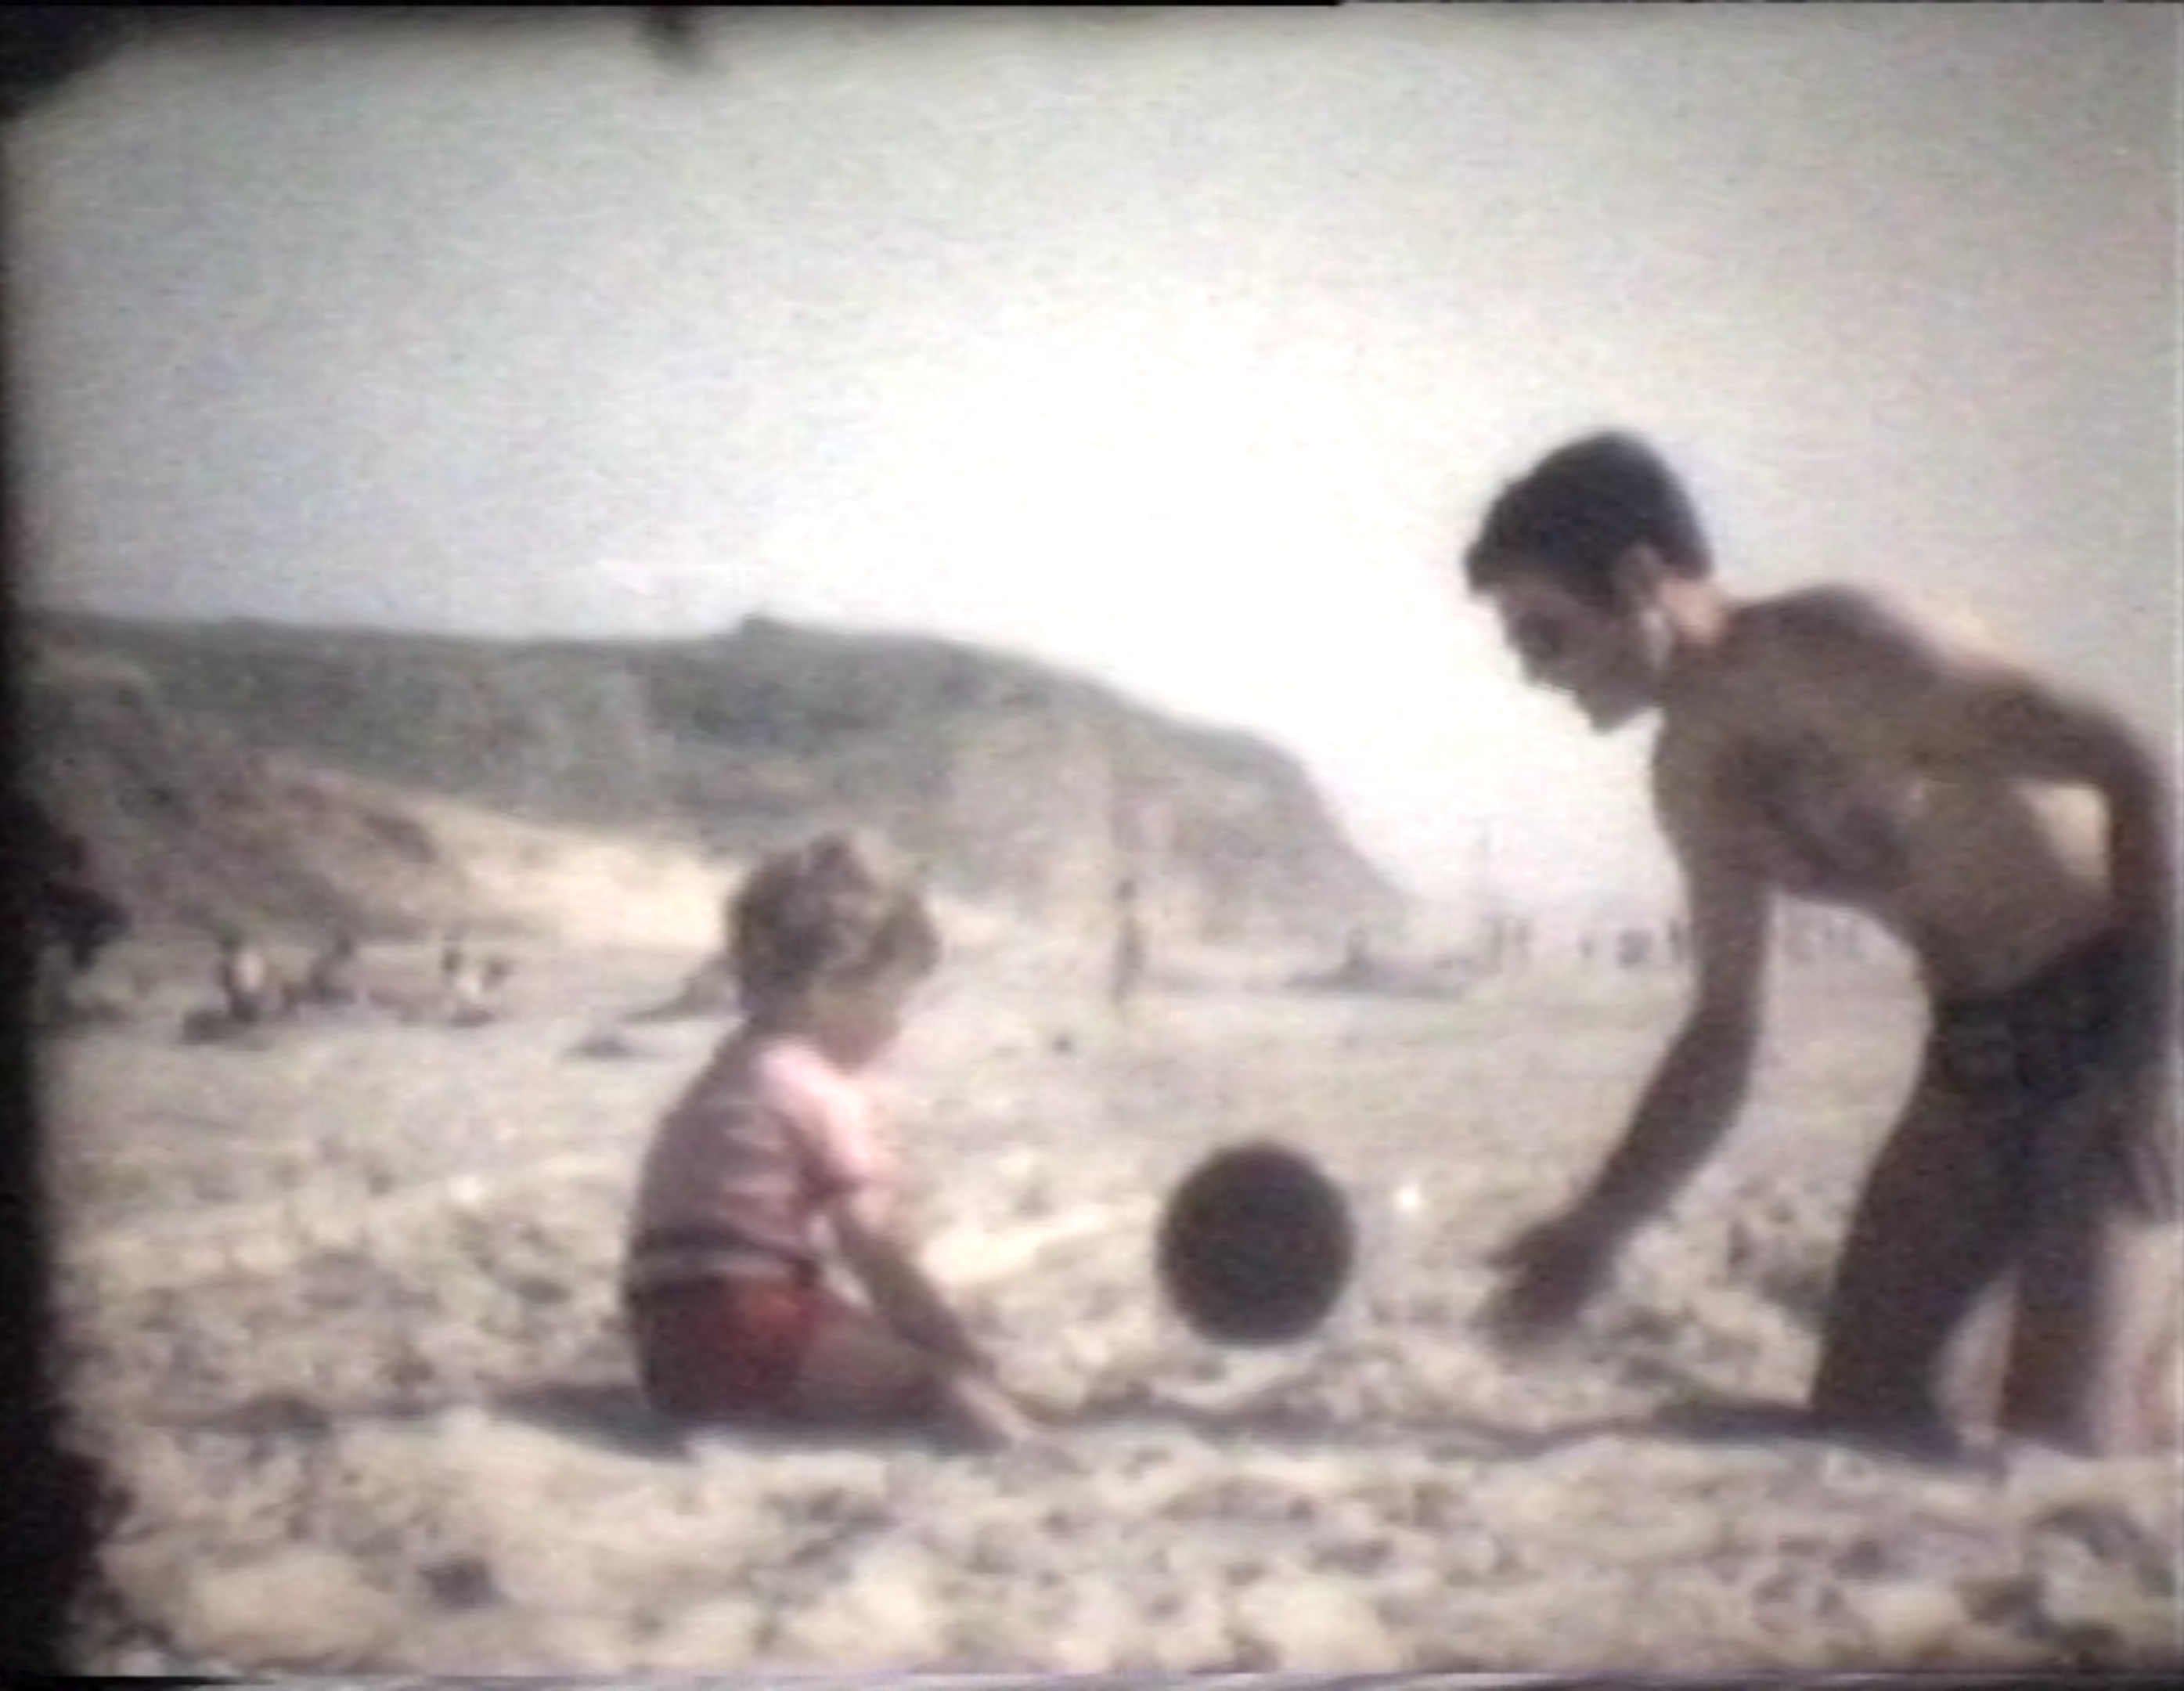 תמונה בסגנון צילום פילים של אבא וילדה משחקים בכדור בחוף הים, מתוך התערוכה פוטוריזם ירושלמי - עבודות סטודנטים במחלקה לצילום